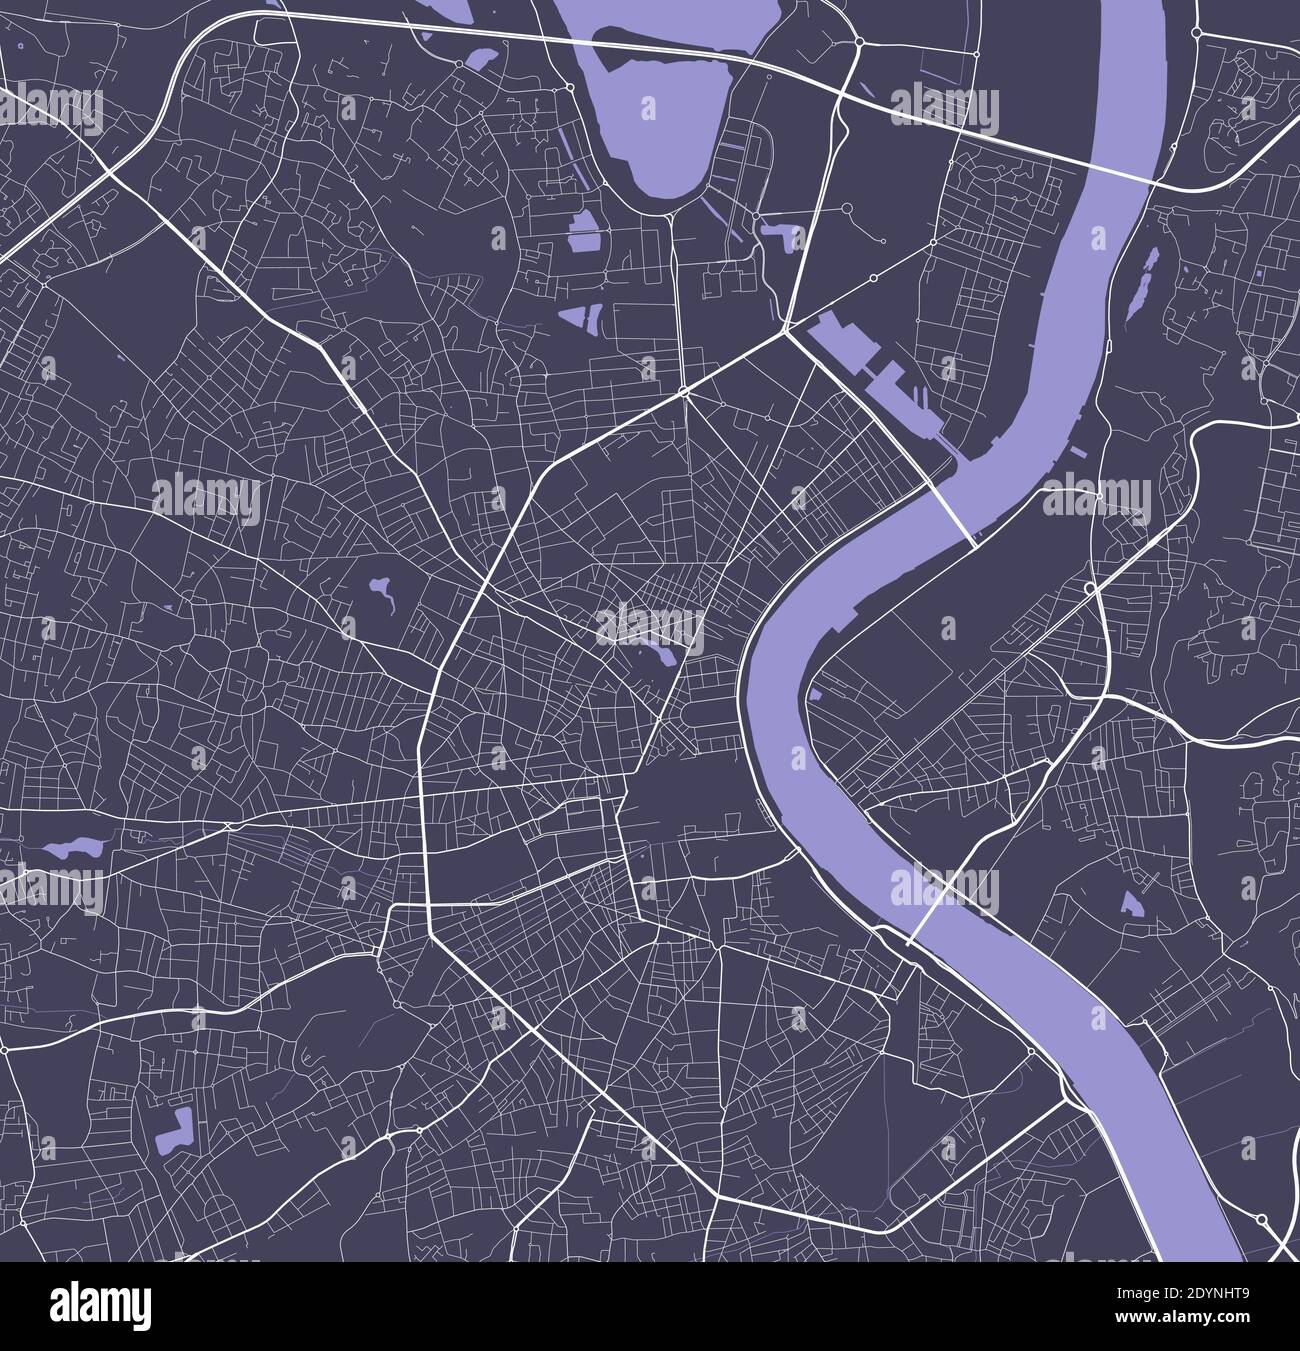 Mappa dettagliata dell'area amministrativa della città di Bordeaux. Illustrazione vettoriale priva di royalty. Panorama cittadino. Mappa turistica grafica decorativa di Bordeaux te Illustrazione Vettoriale